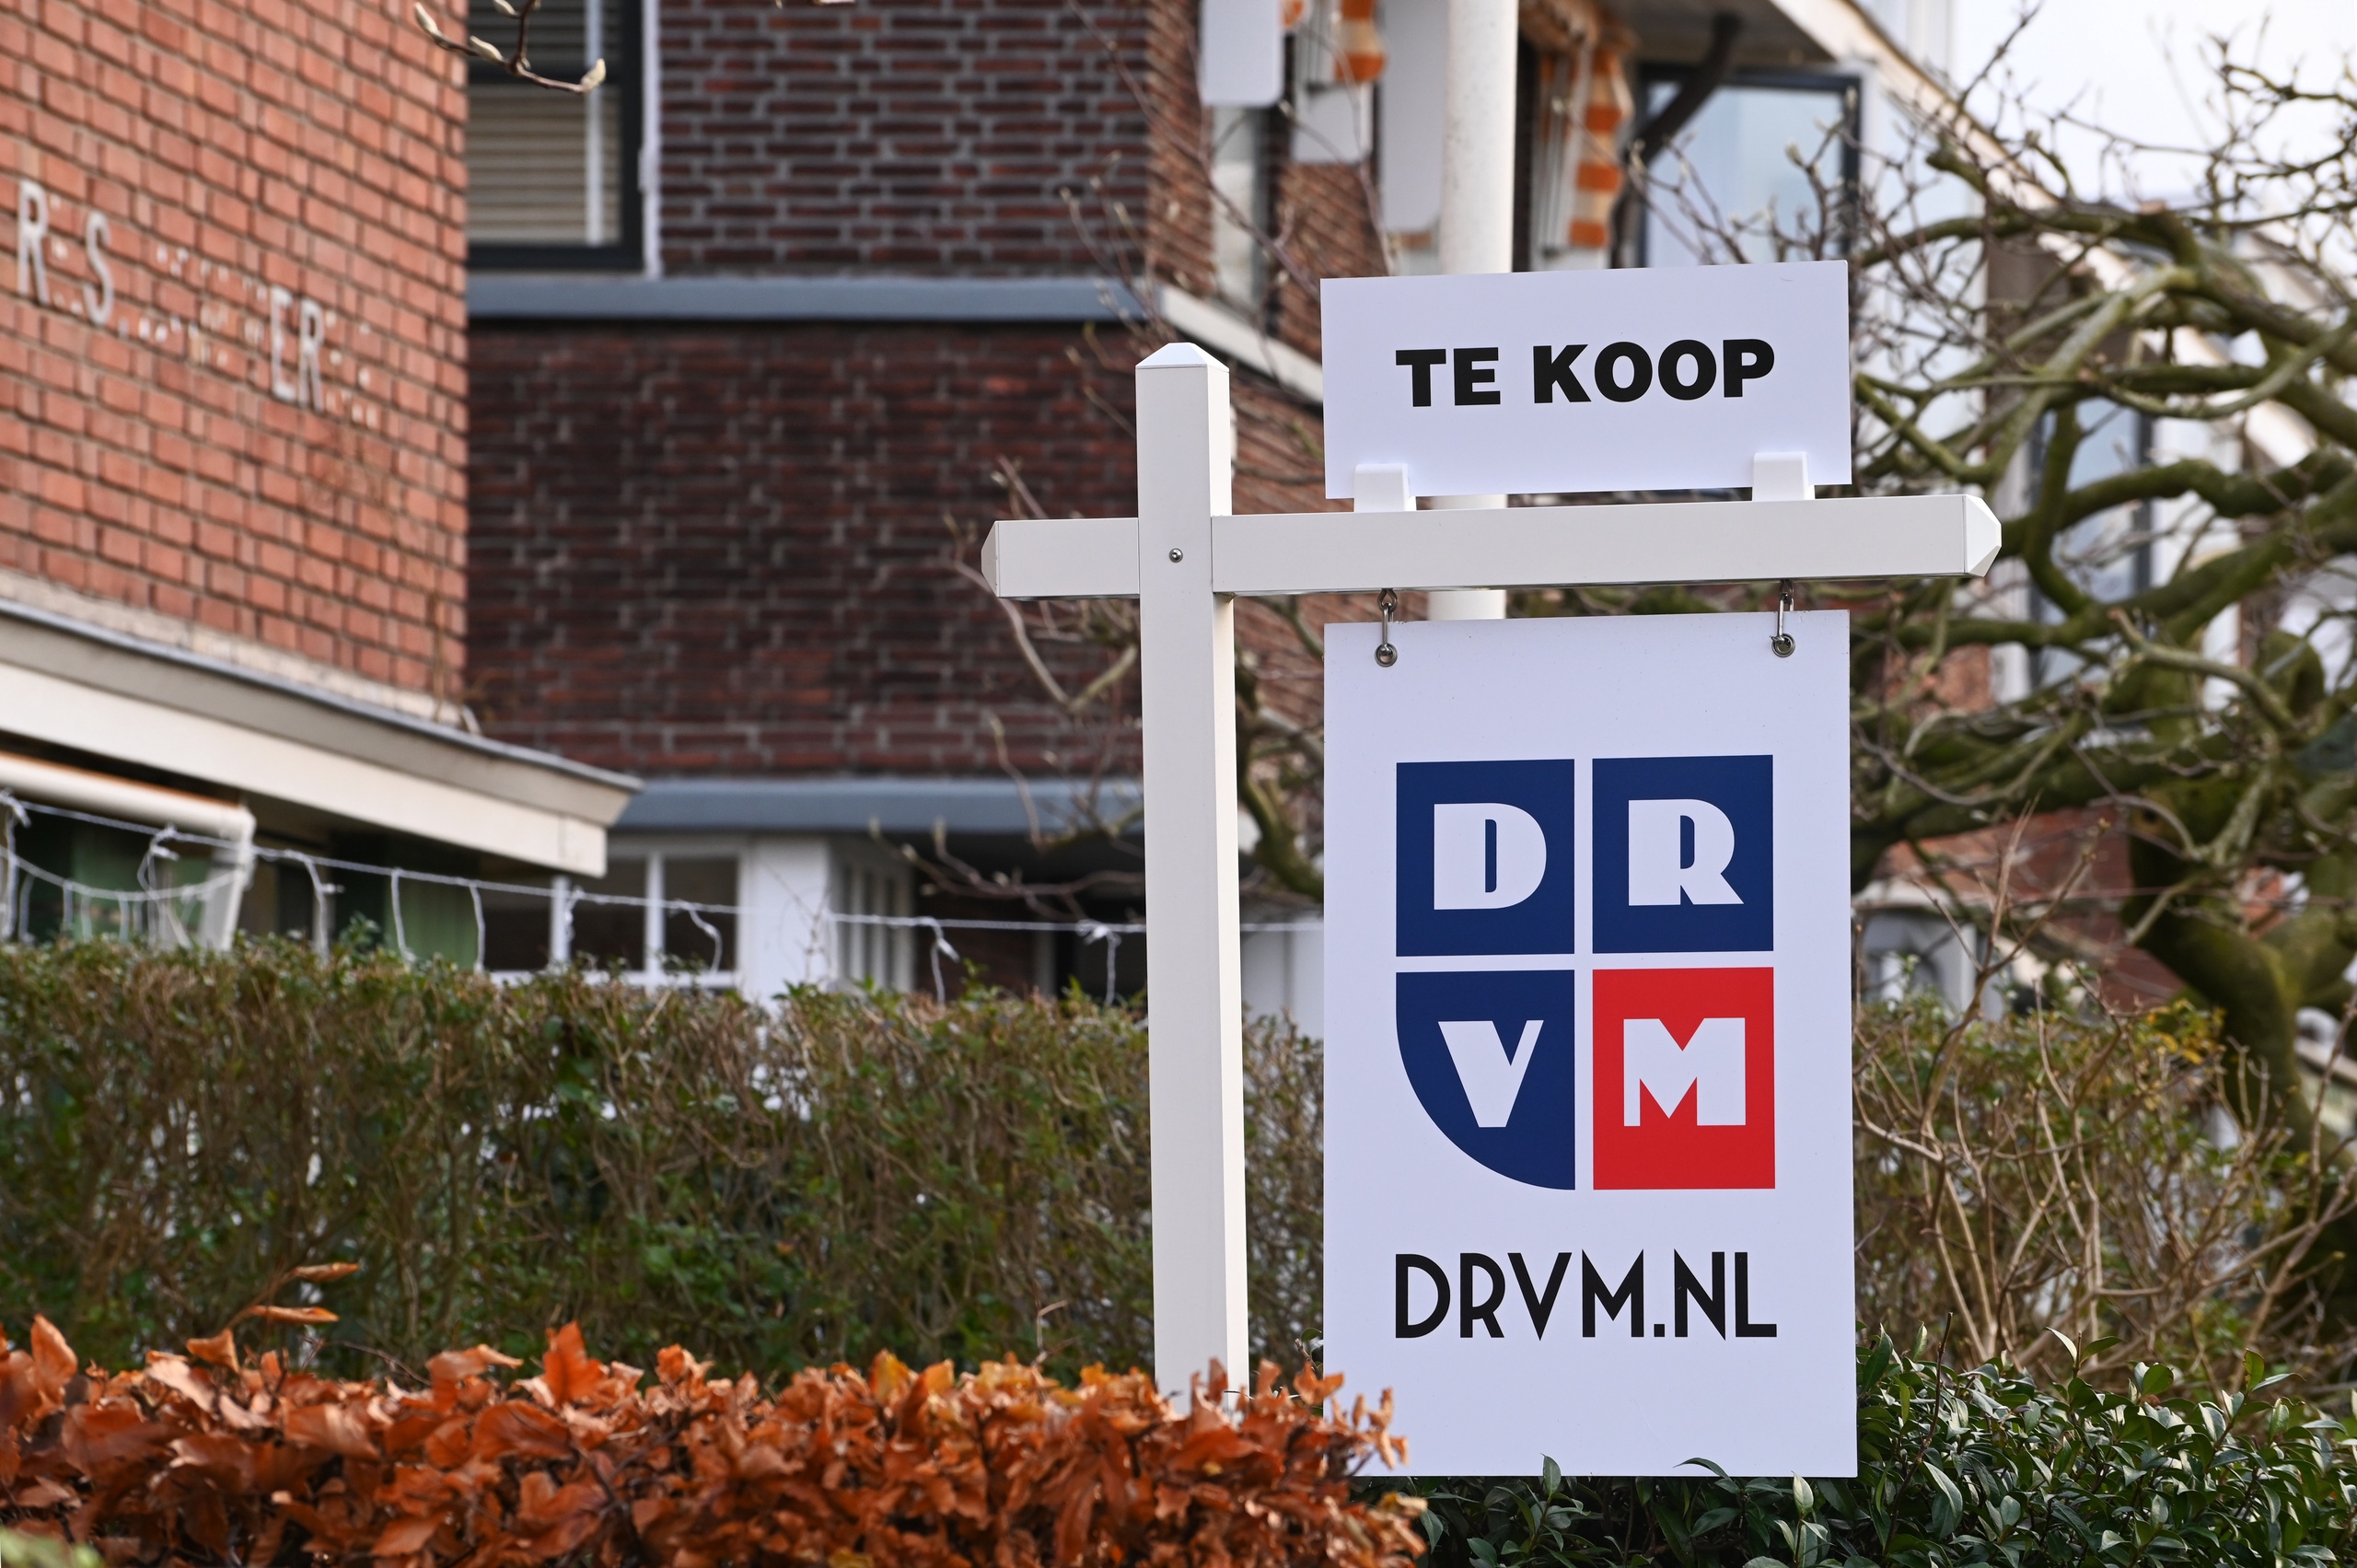 Woning te Koop, woningaanbod van bestaande woningen in Rotterdam